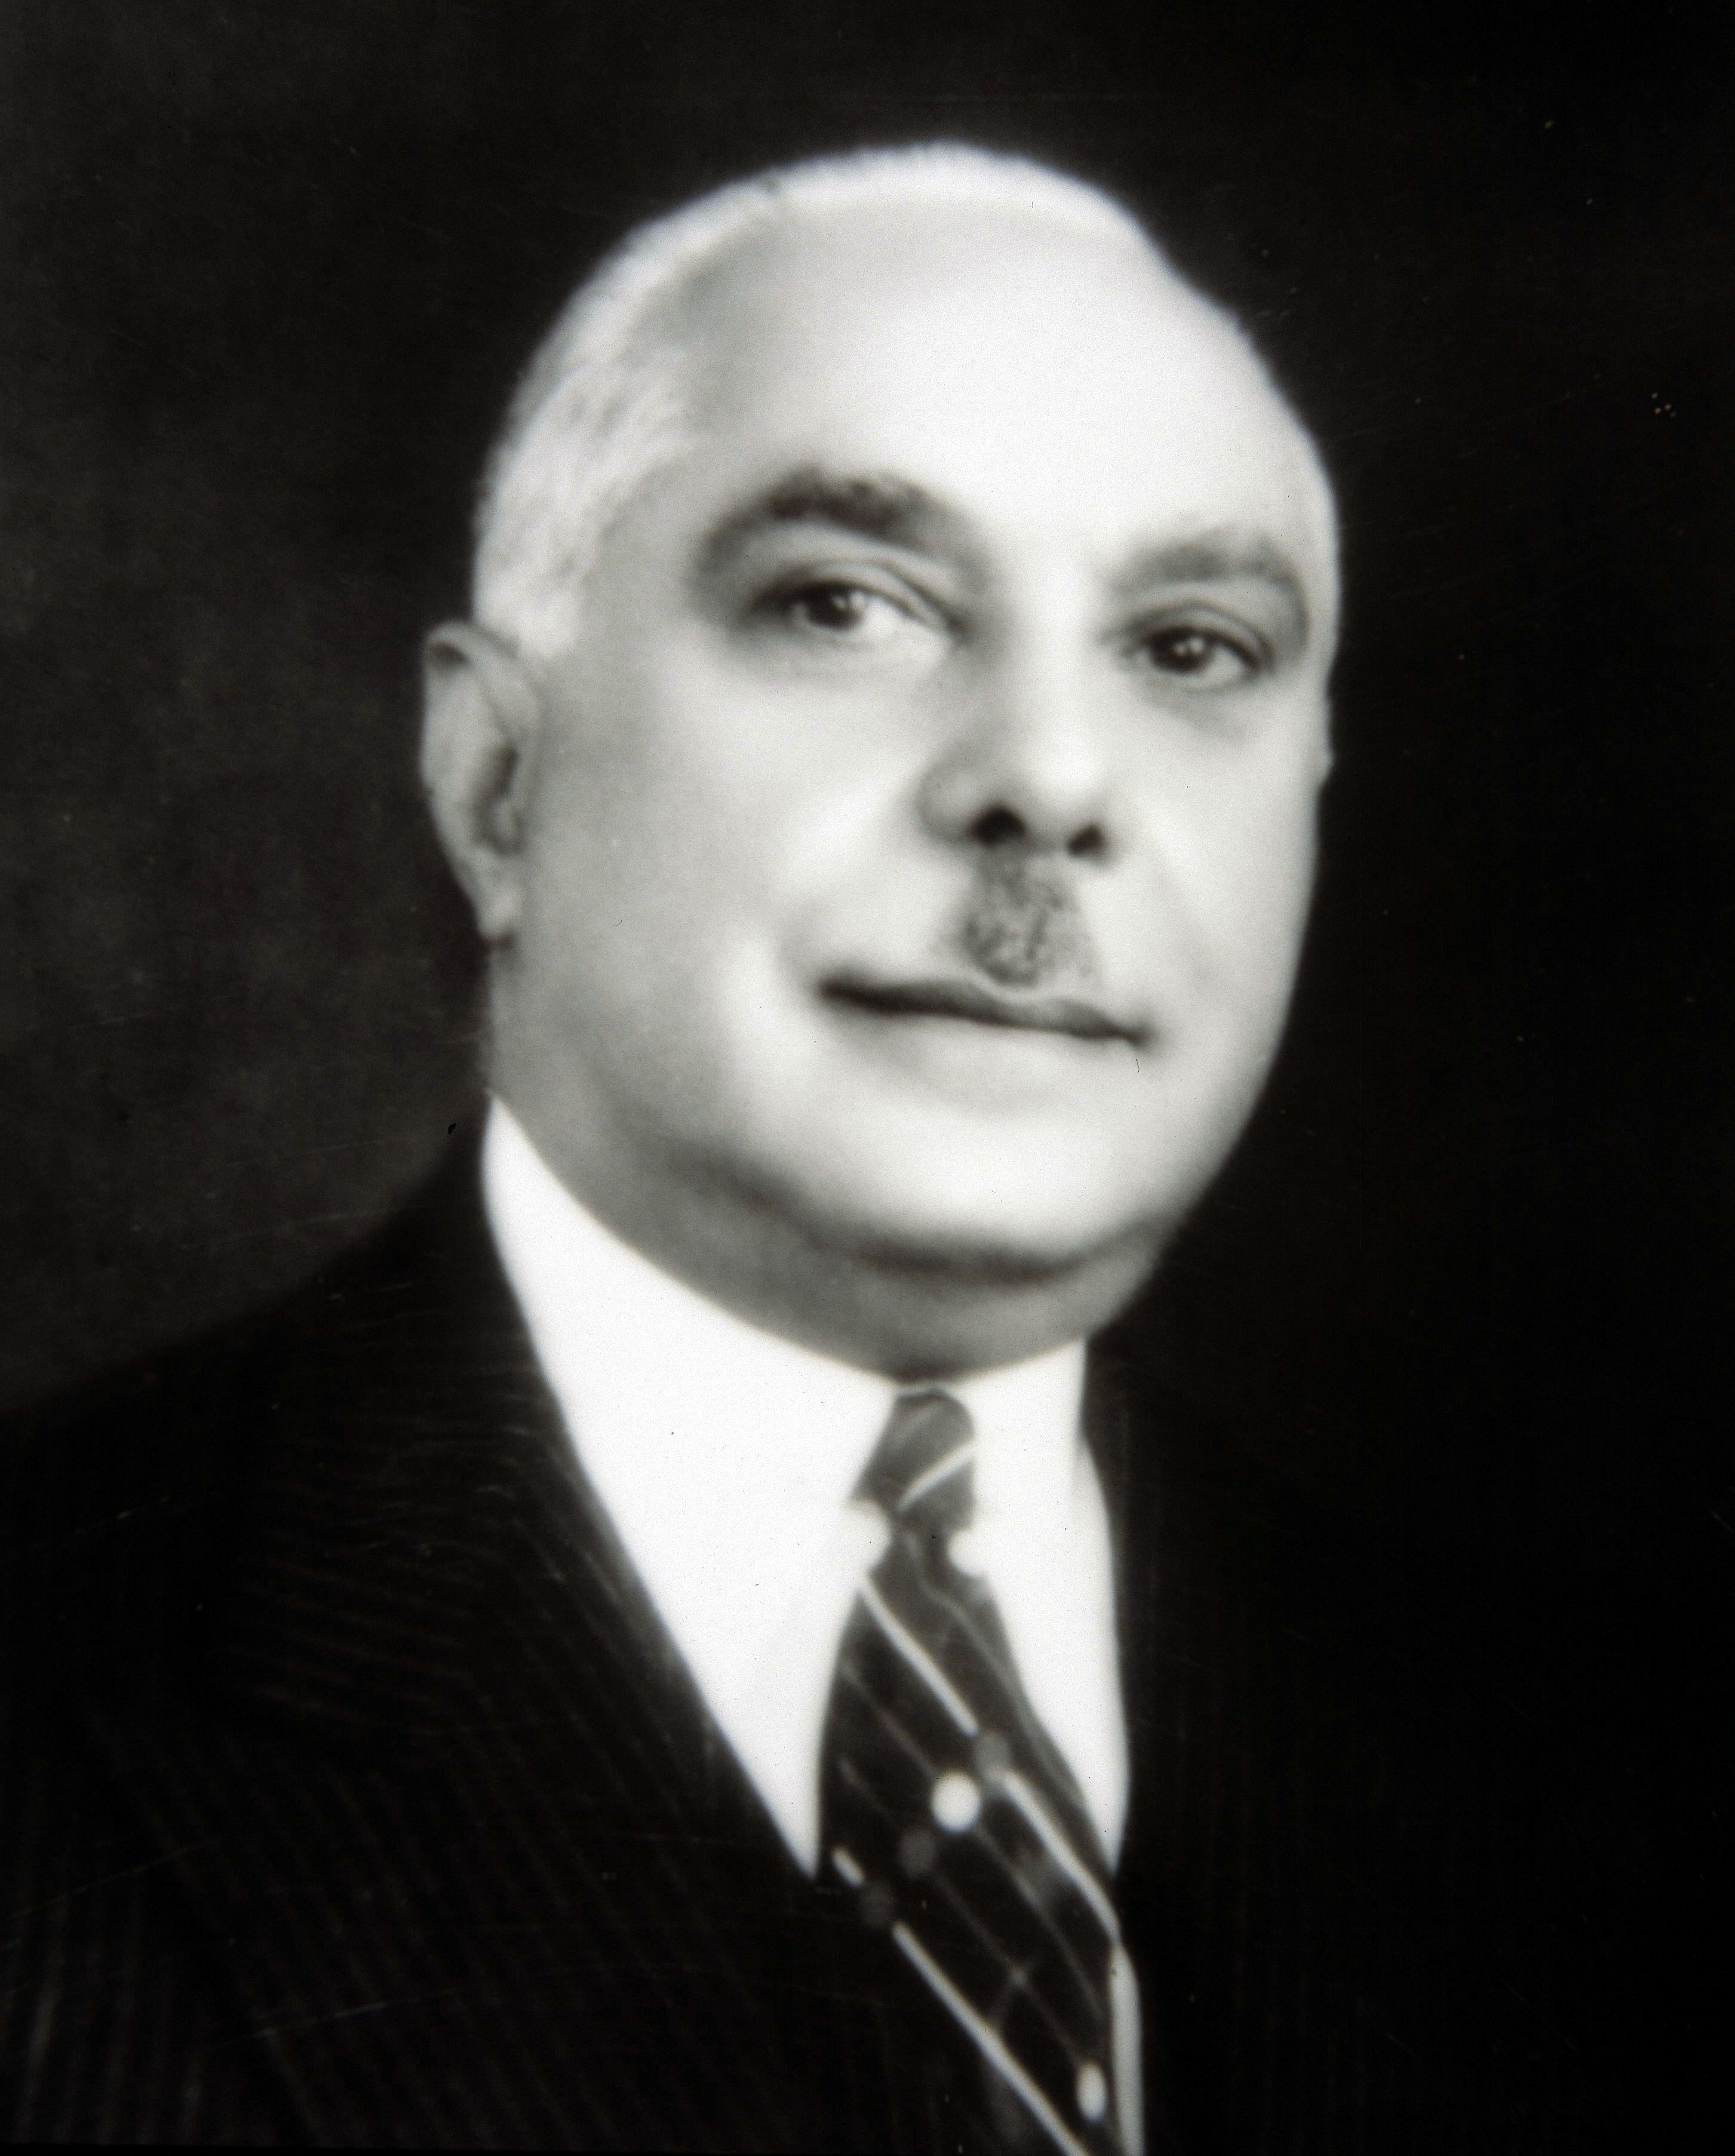 El dictador dominicano Rafael Lenidas Trujillo